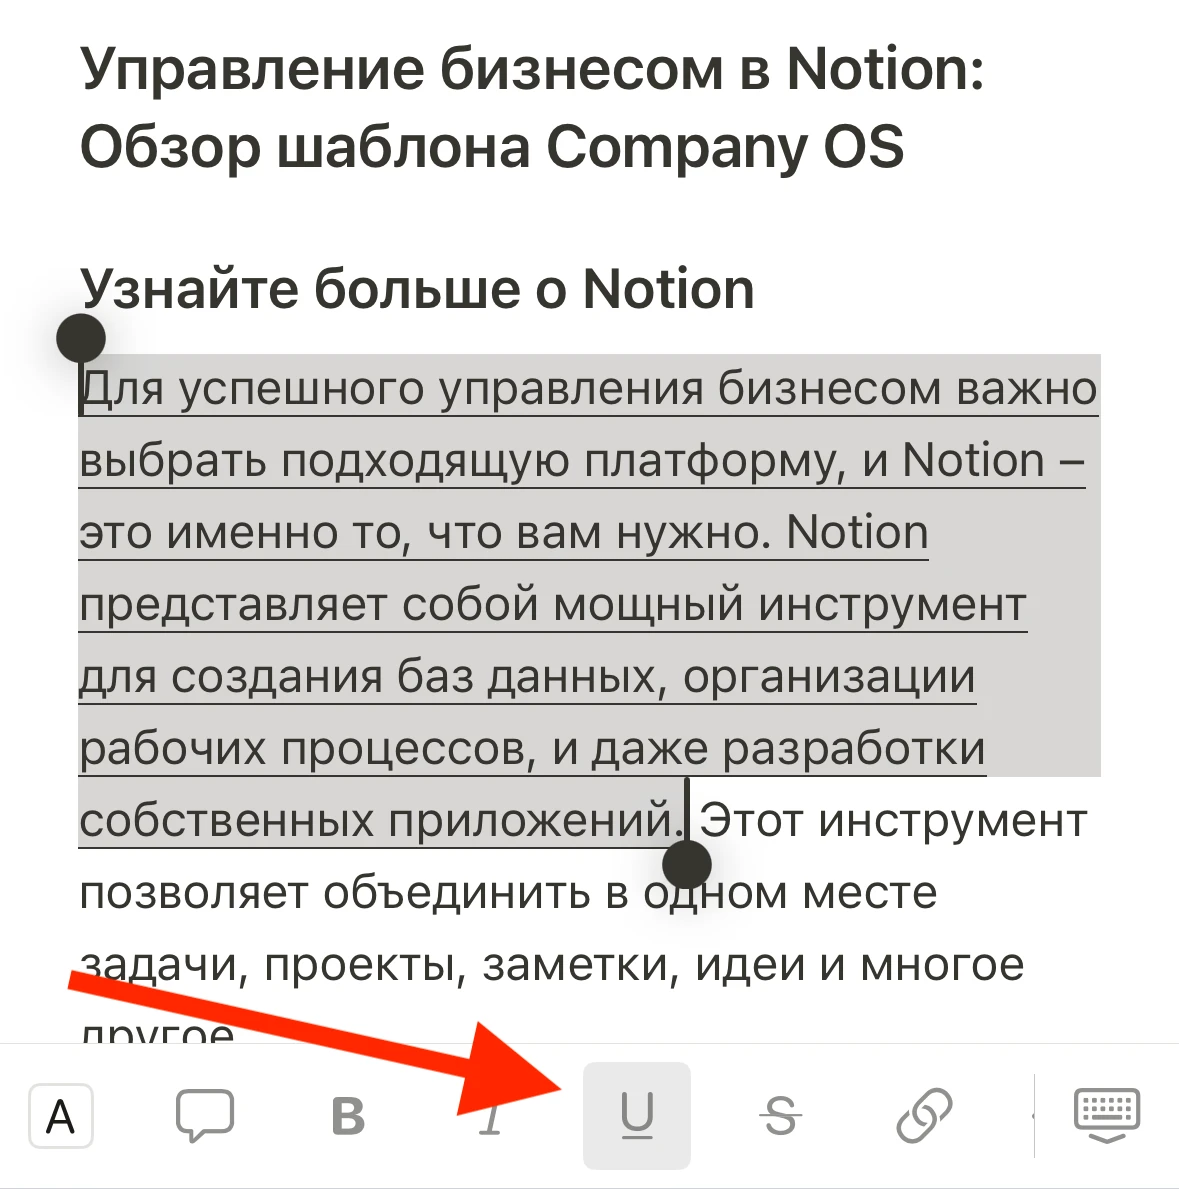 Как подчеркнуть текст в Notion Mobile (Android/iPhone)